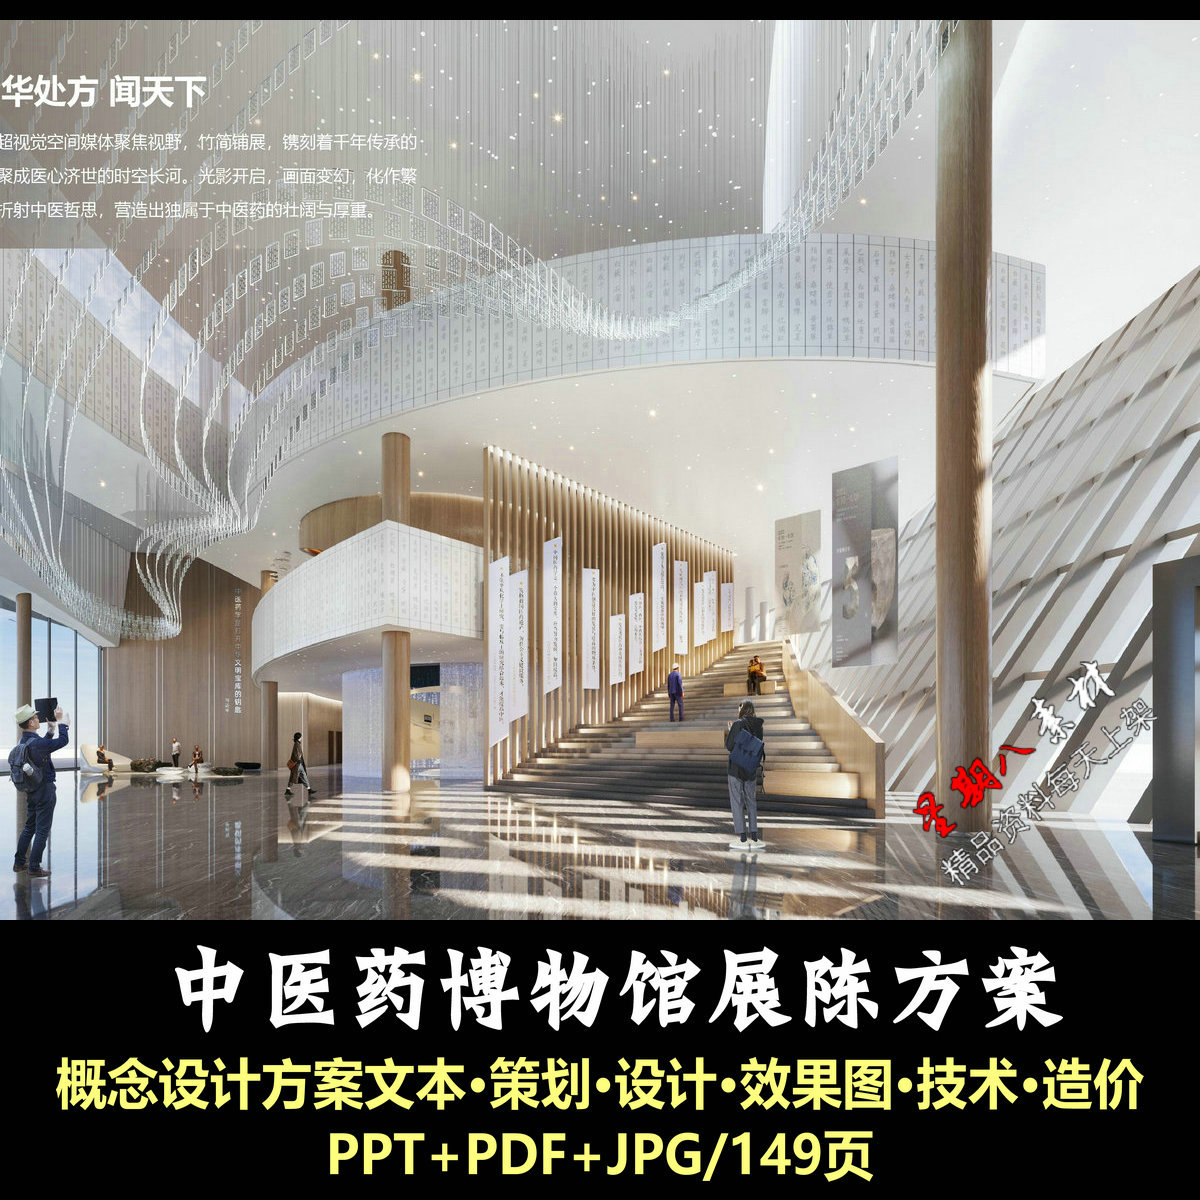 f444中医药博物馆展厅展陈PPT概念设计方案文本项目策划效果图